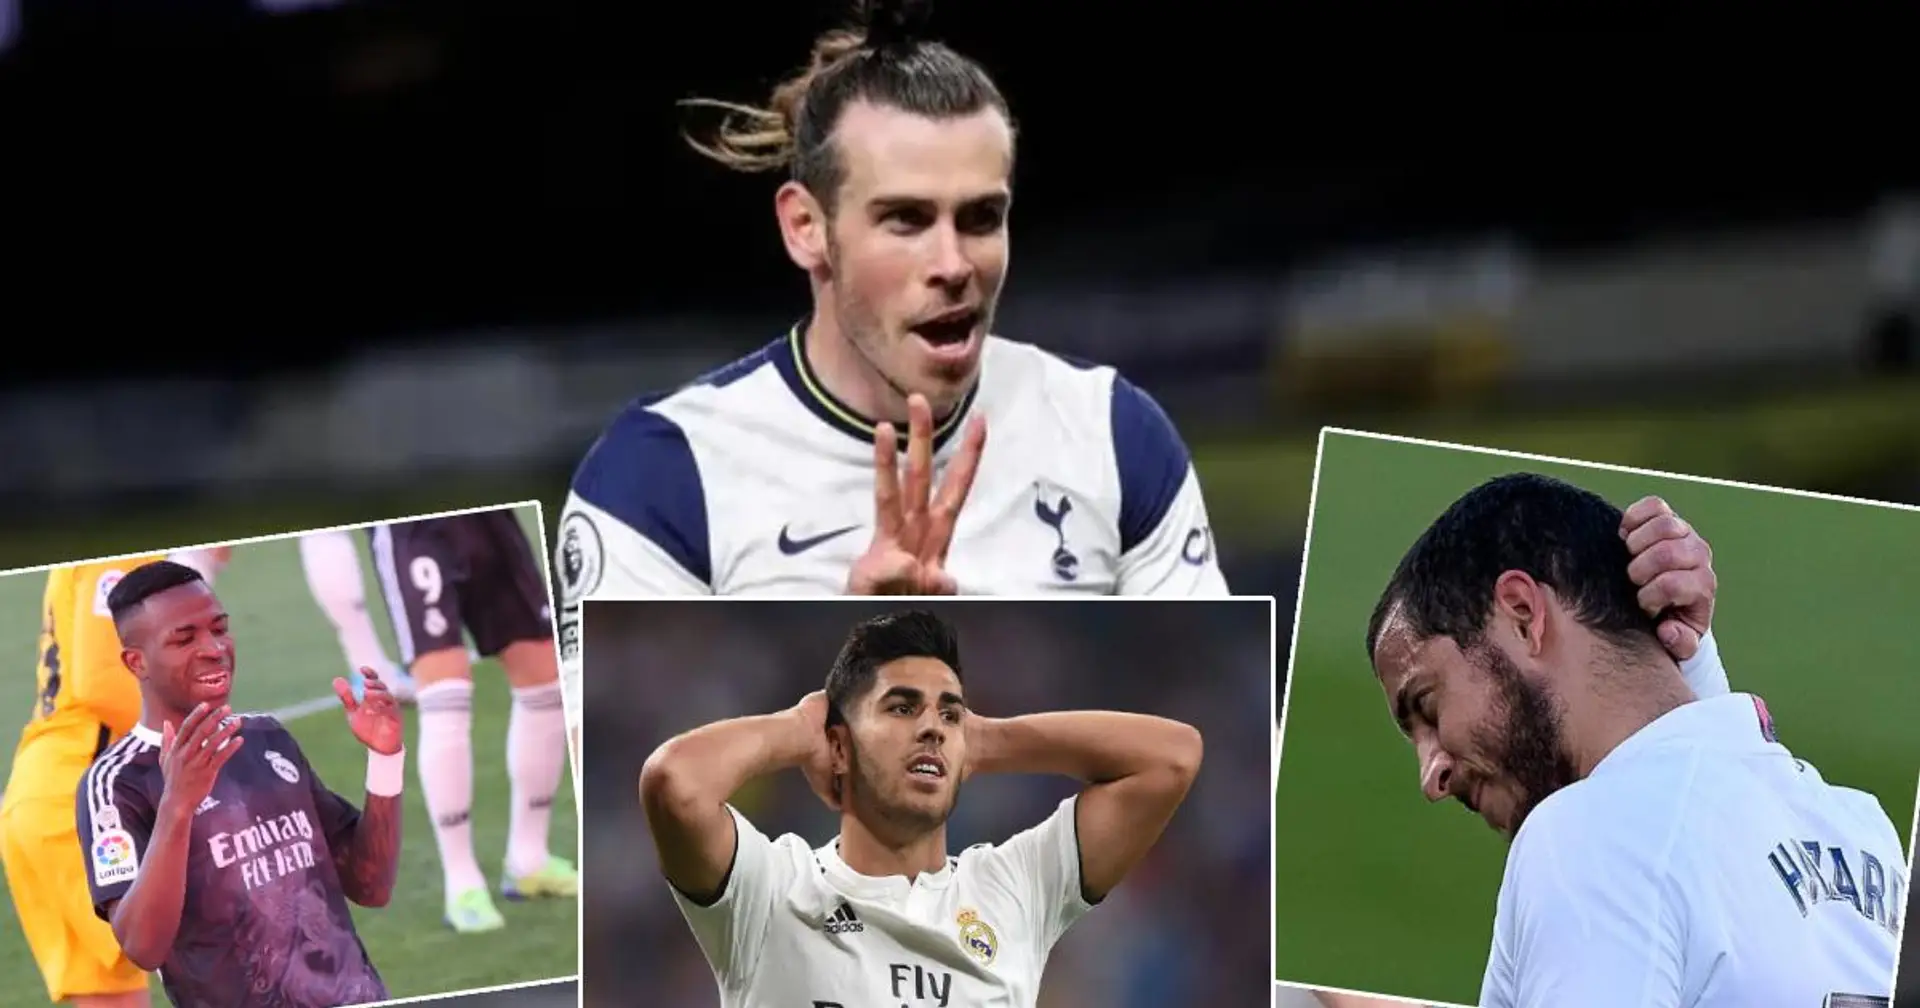 "Les Spurs devraient l'acheter": les Madridistas réagissent au fait que Bale marque autant de buts que tous les ailiers madrilènes réunis